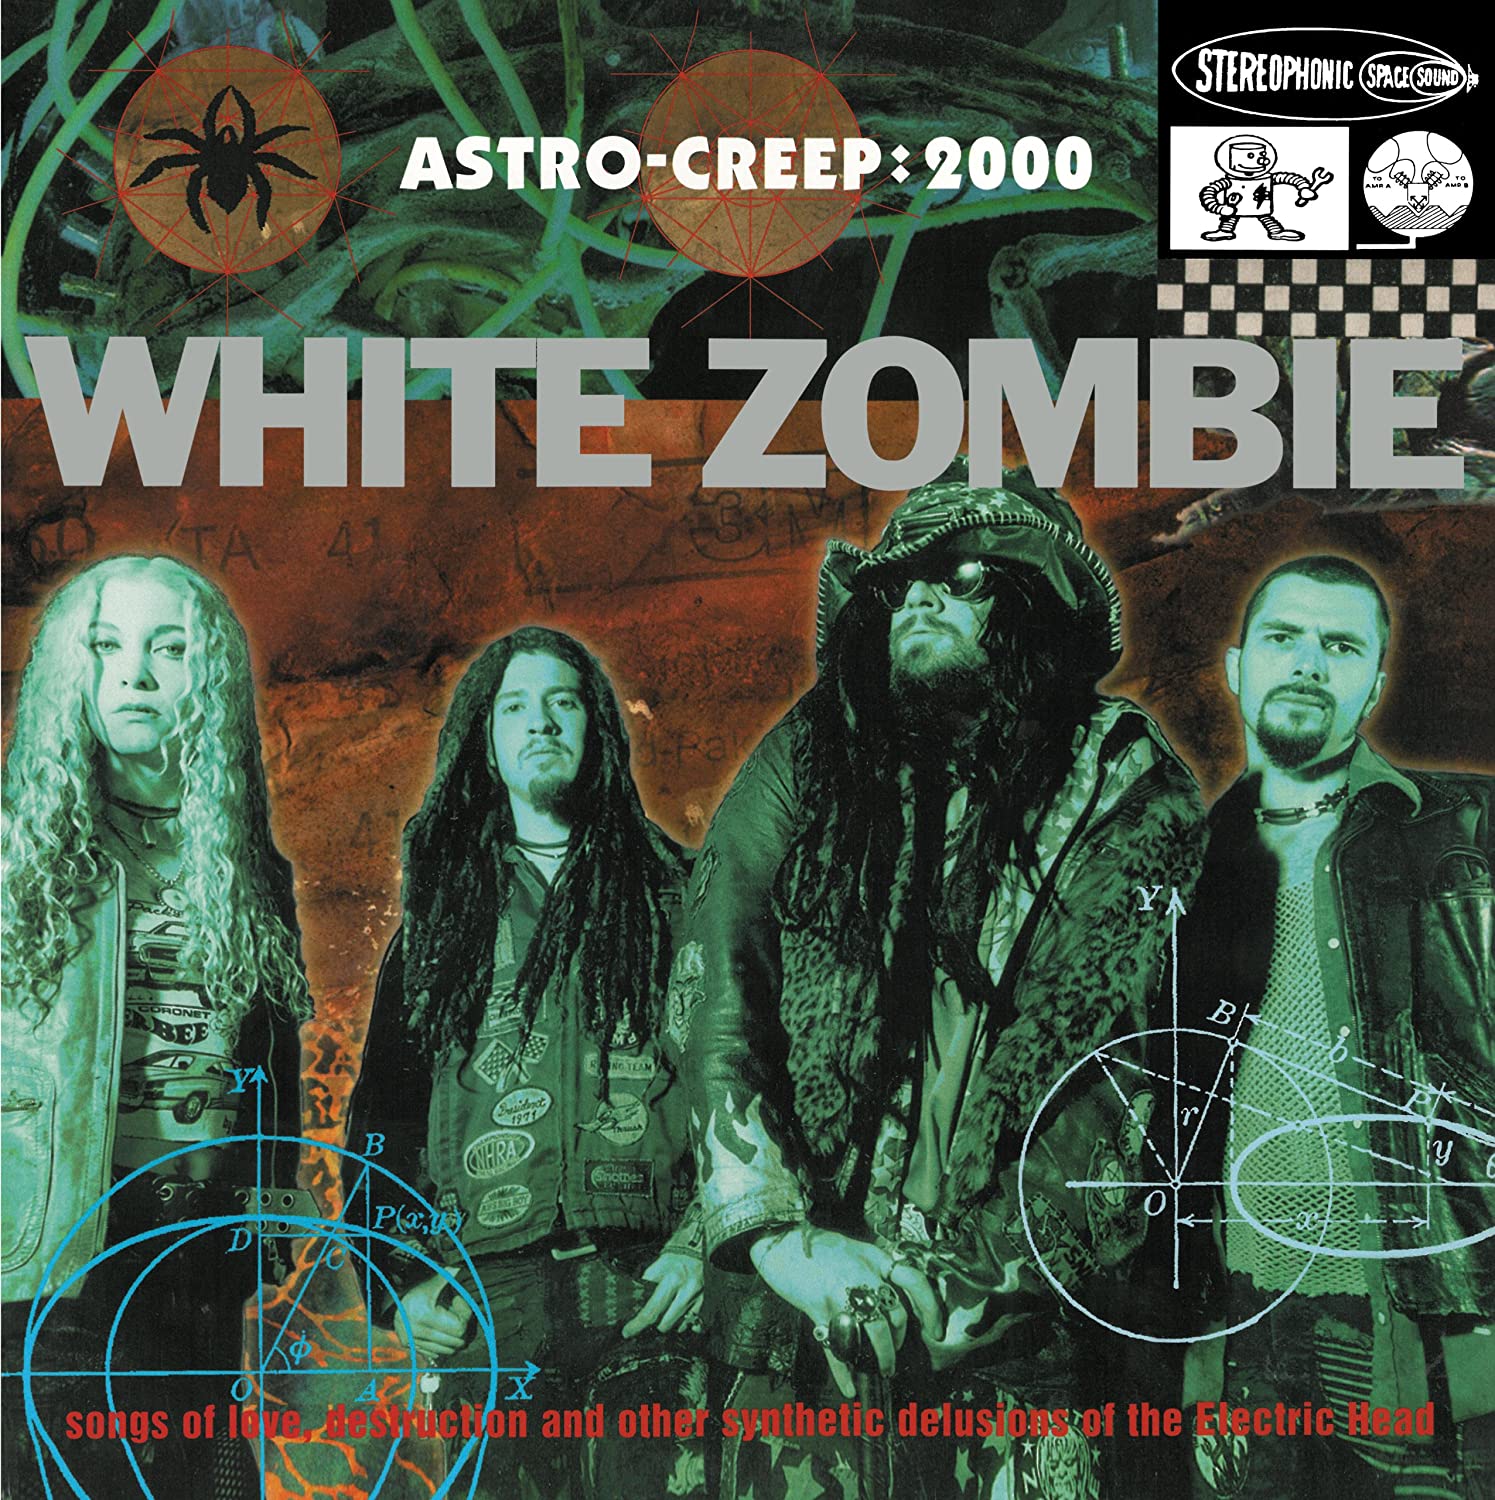 White Zombie - Astro-Creep: 2000 (Vinyl LP)